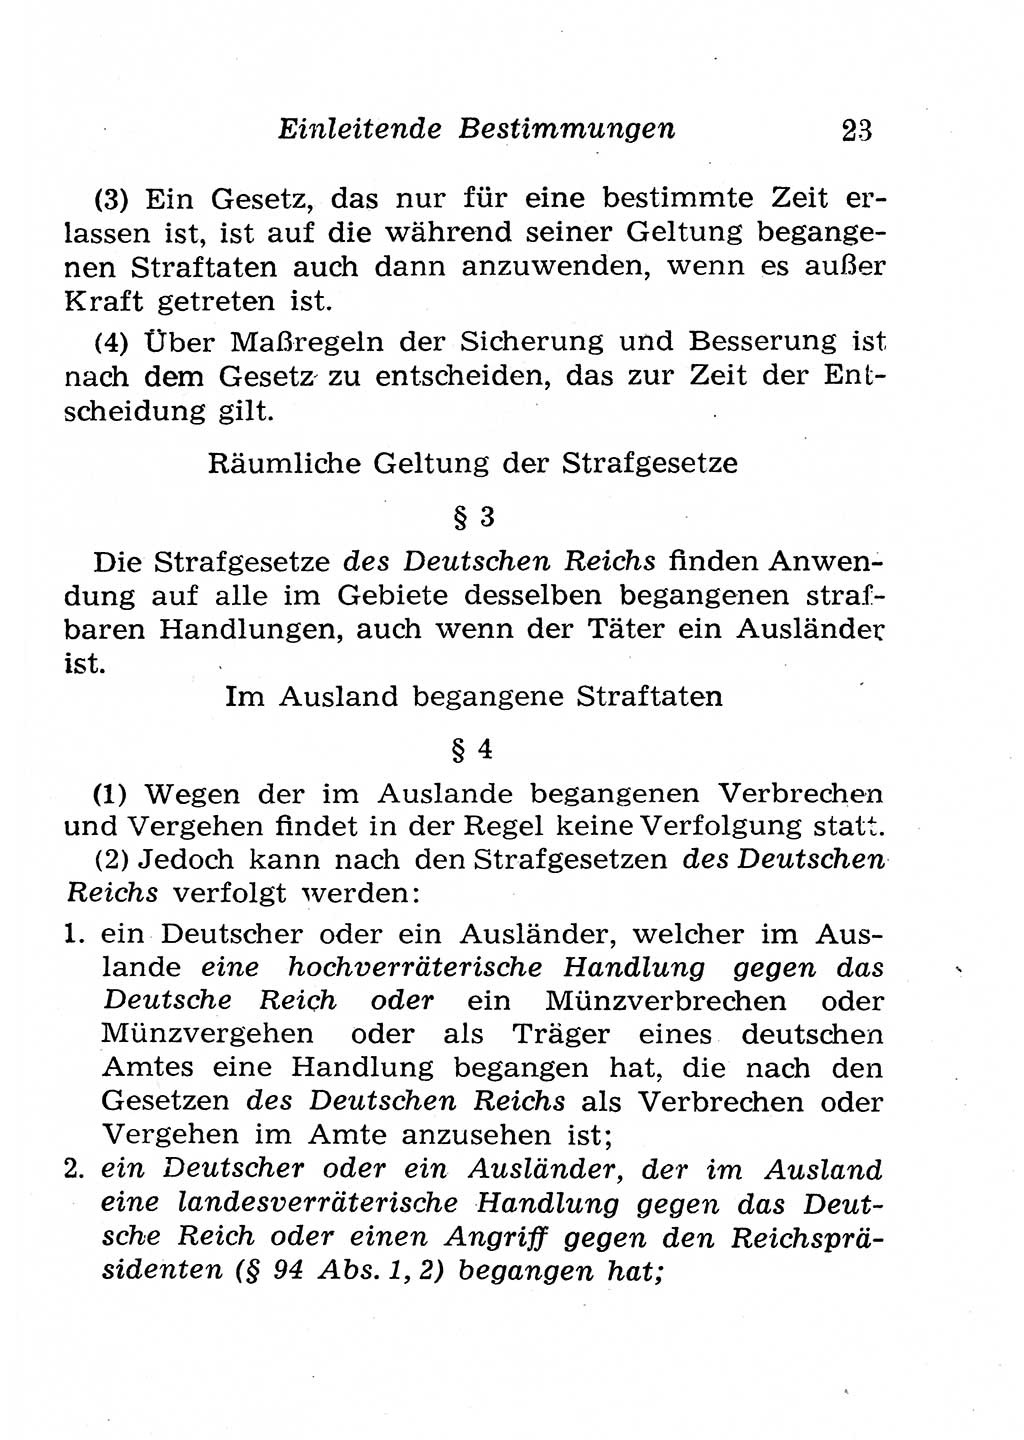 Strafgesetzbuch (StGB) und andere Strafgesetze [Deutsche Demokratische Republik (DDR)] 1958, Seite 23 (StGB Strafges. DDR 1958, S. 23)